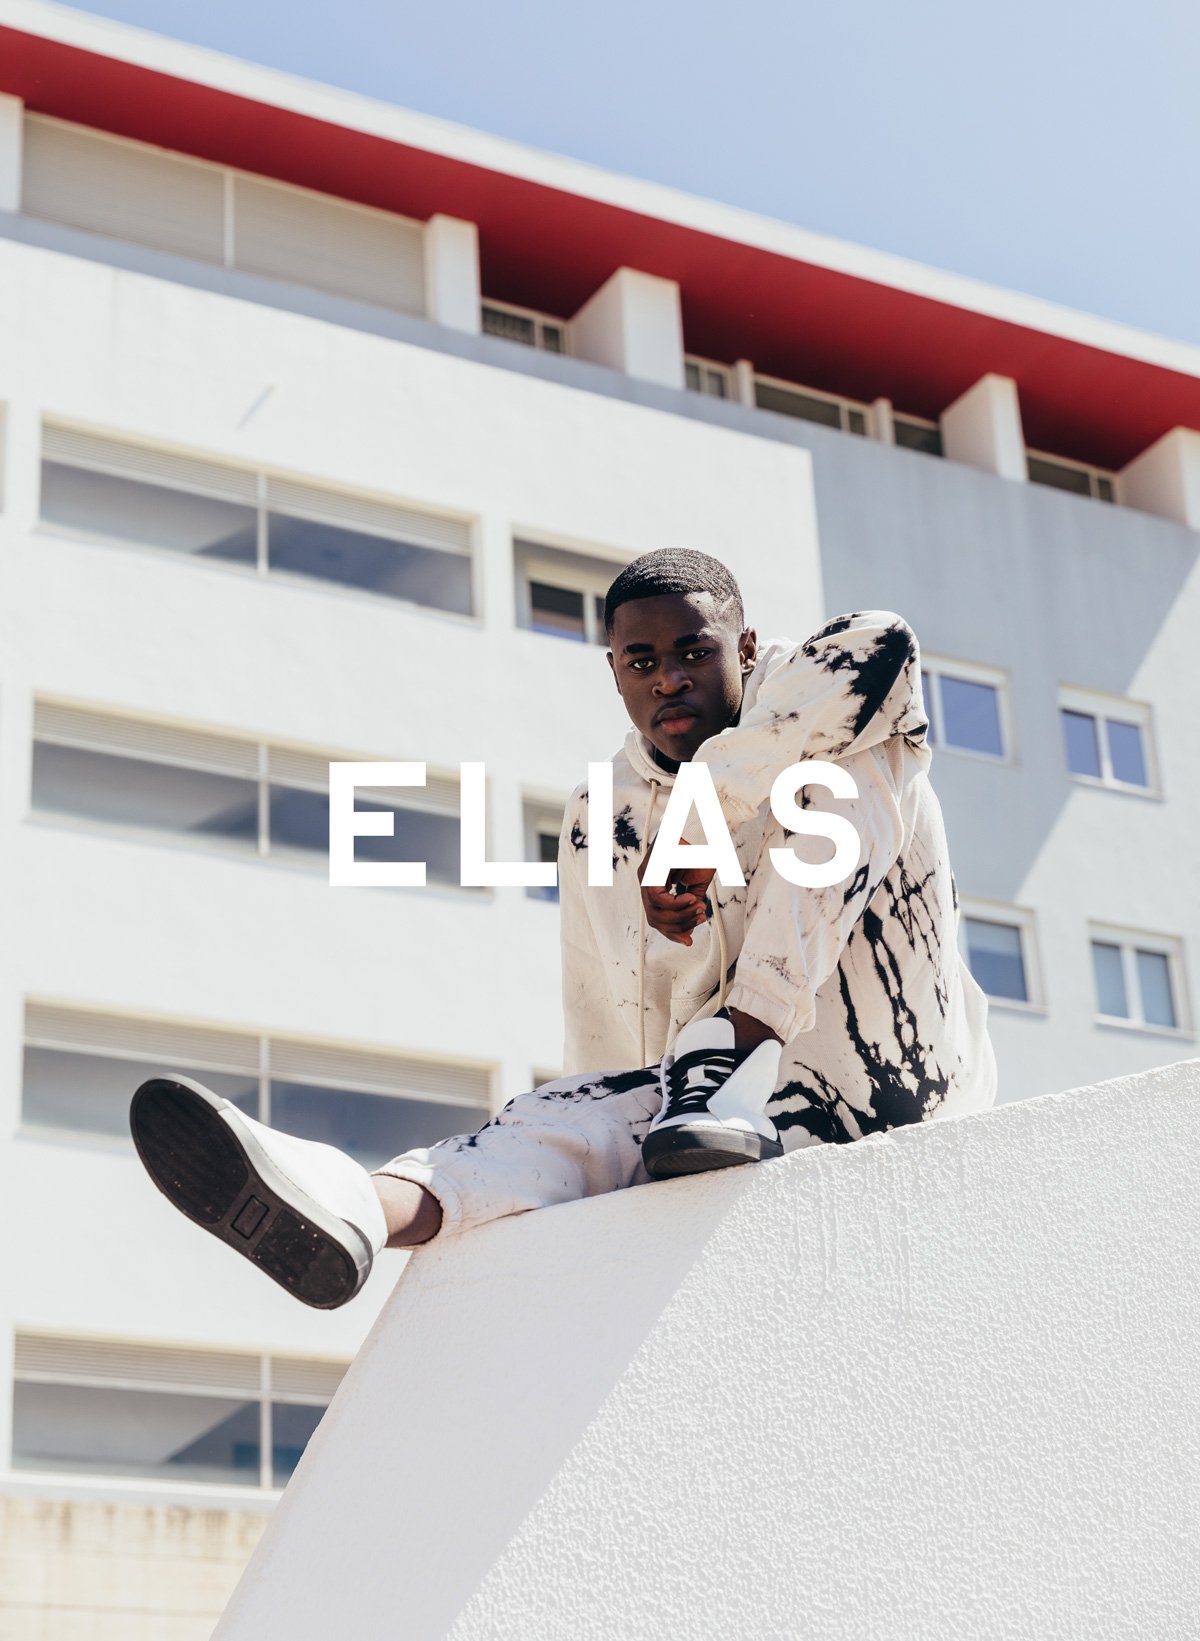 Elias sentado en una pared, usando Diverge sneakers, promoviendo el impacto social y el calzado personalizado a través del proyecto Imagine.